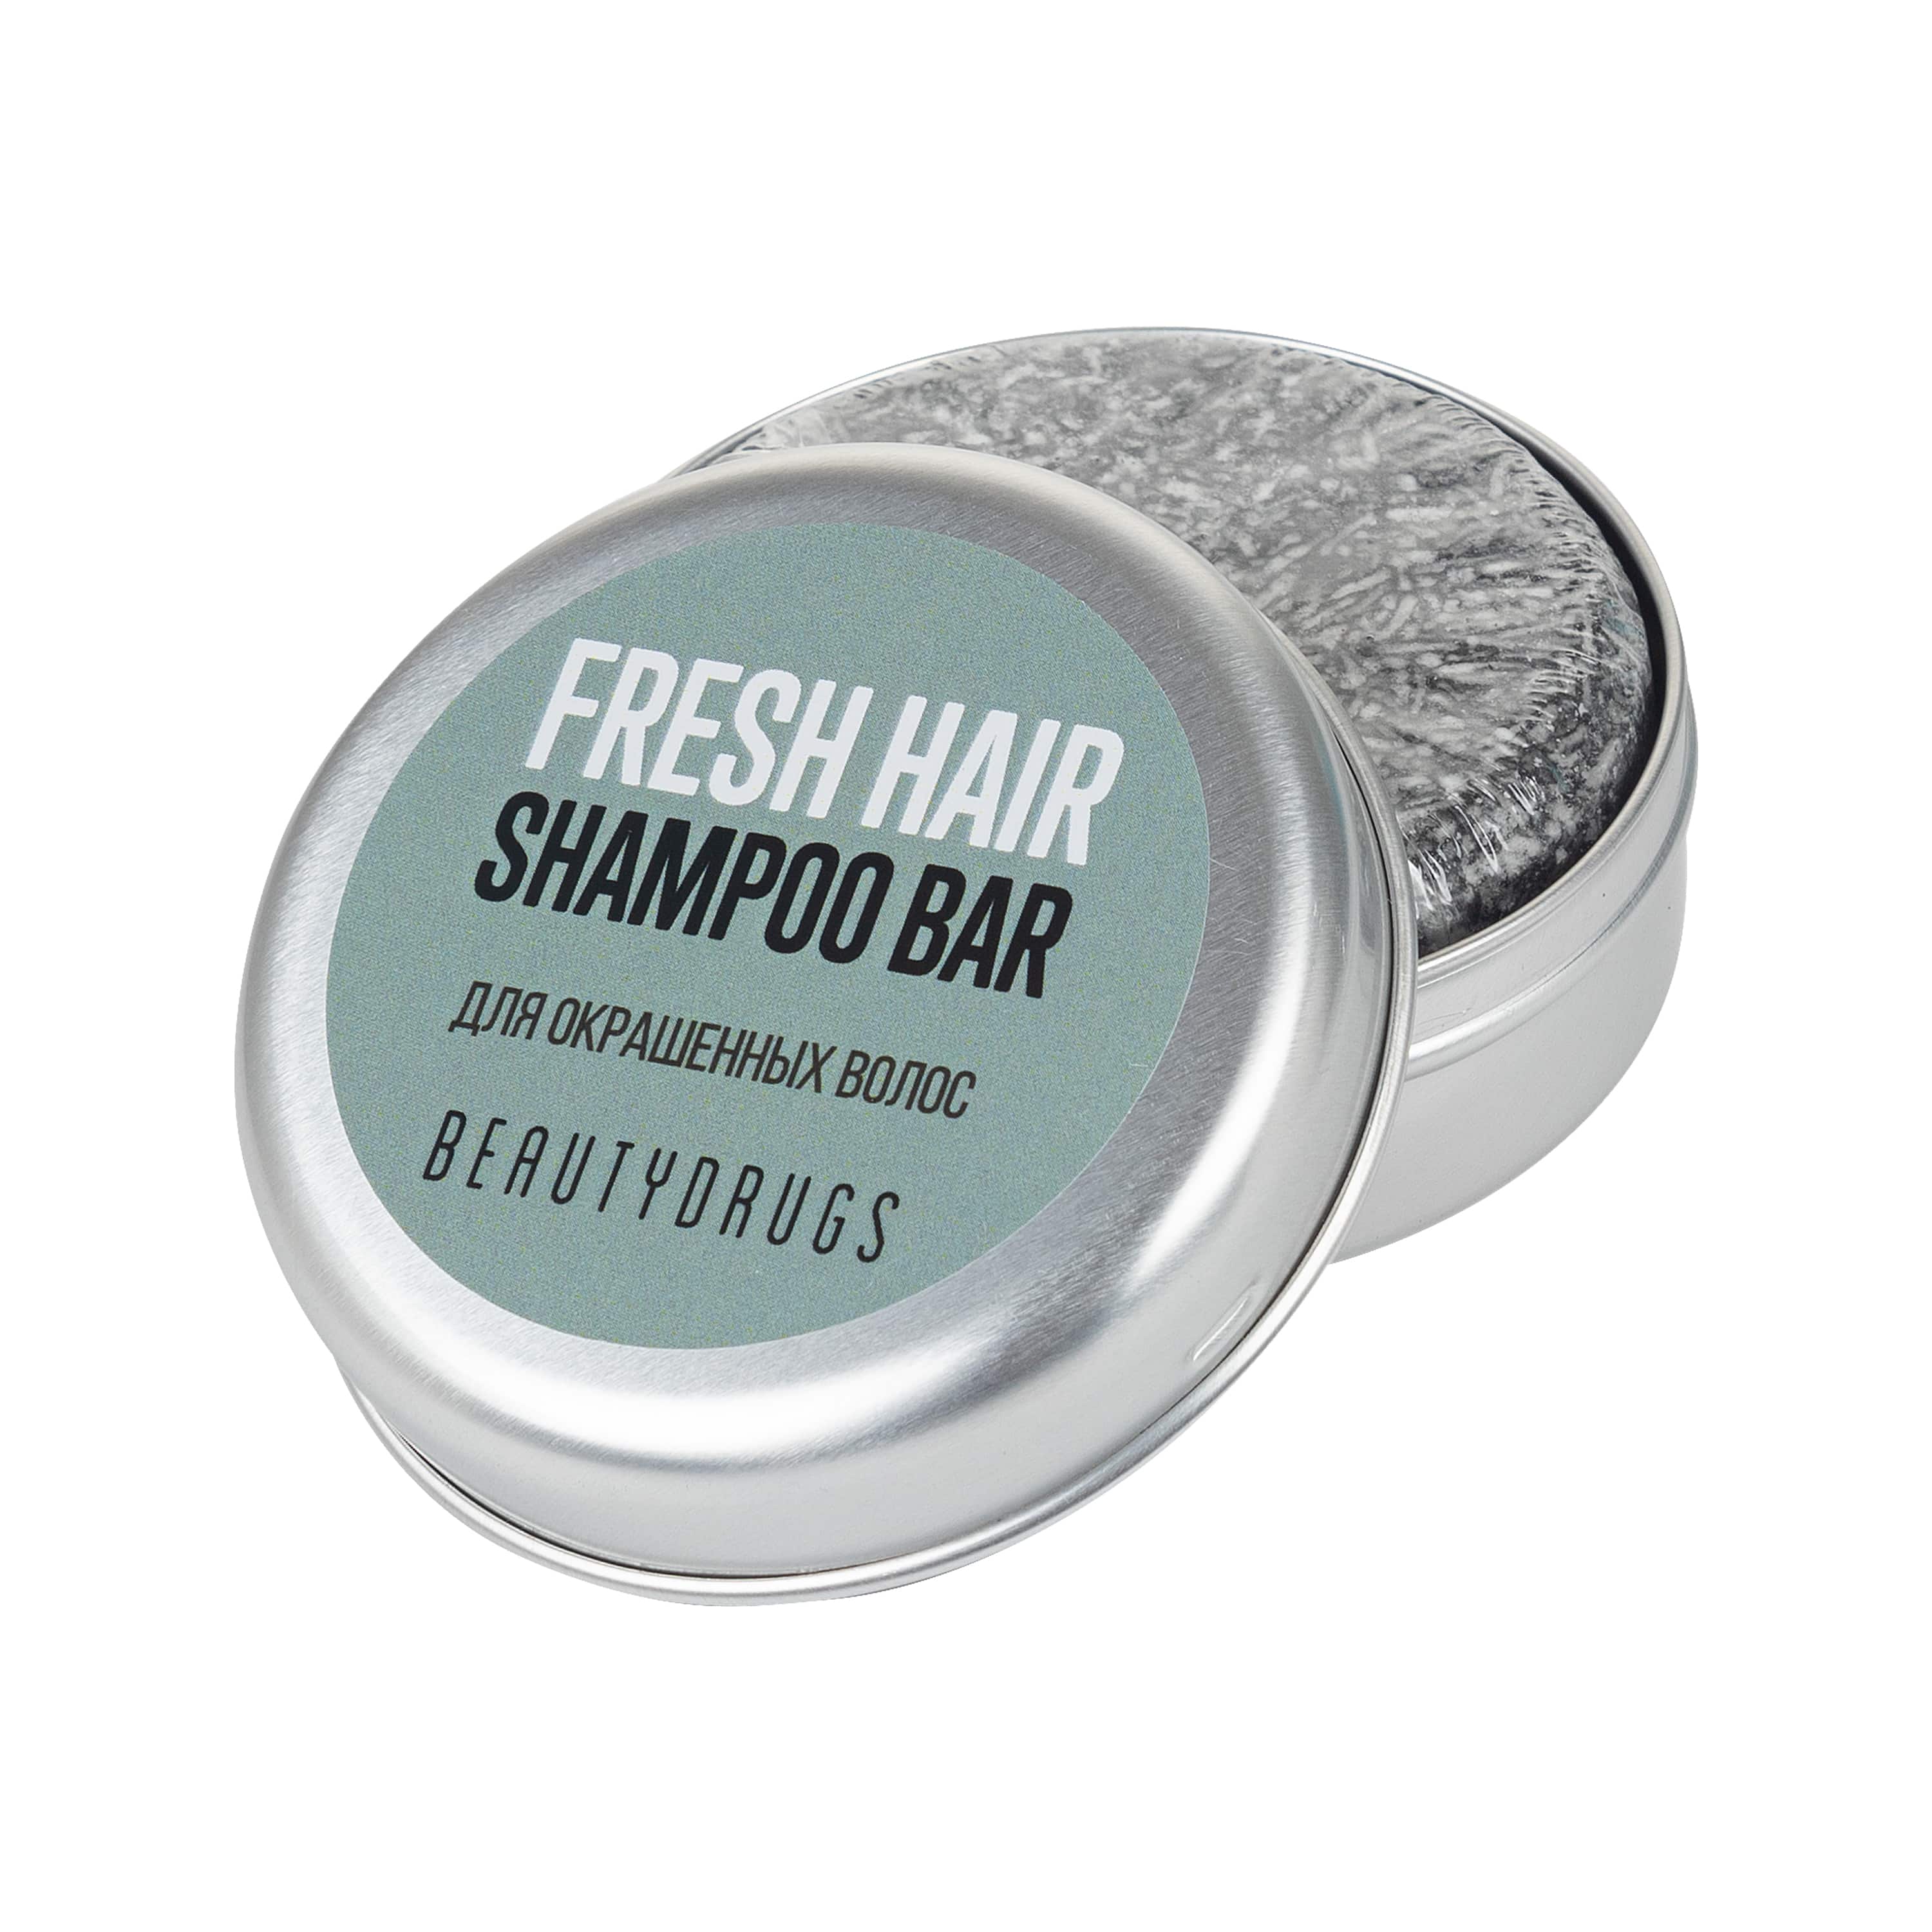 Beautudrugs     Fresh Hair Shampoo Bar   